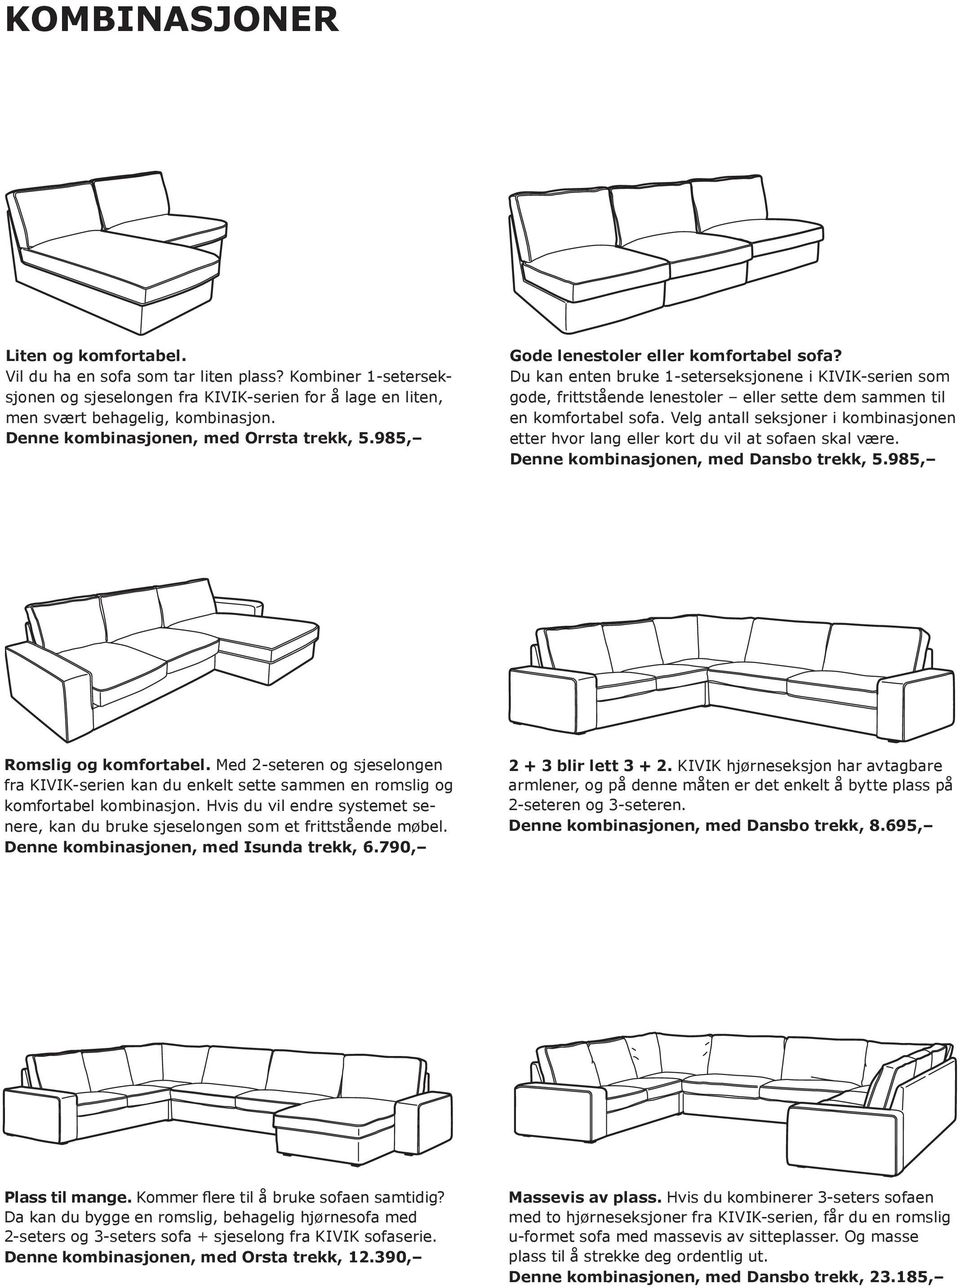 Du kan enten bruke 1-seterseksjonene i KIVIK-serien som gode, frittstående lenestoler eller sette dem sammen til en komfortabel sofa.